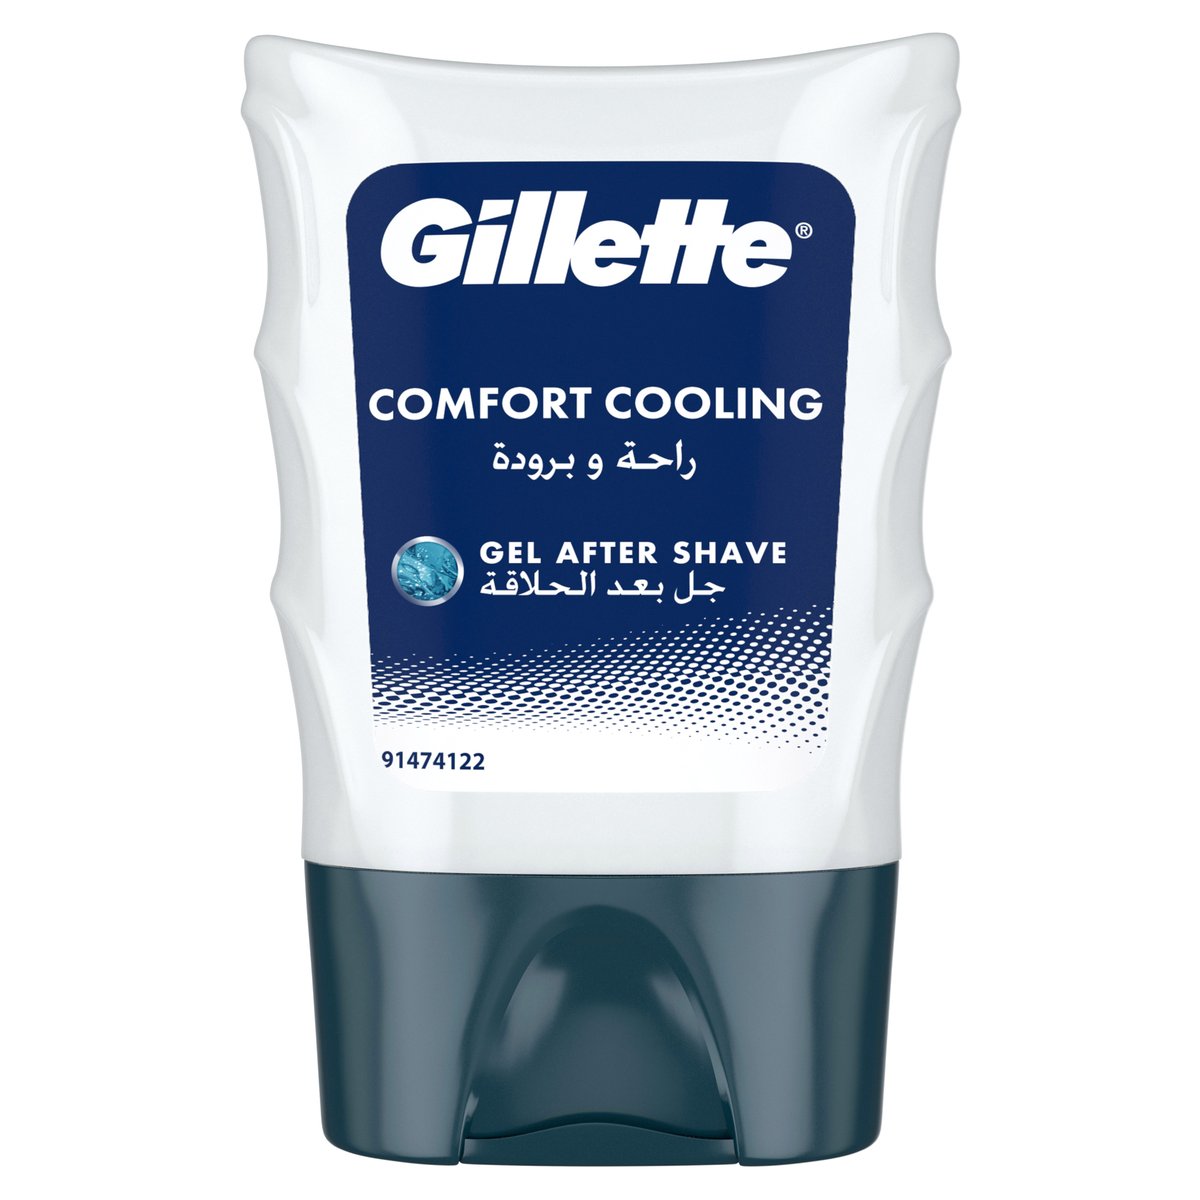 Gillette Gel After Shave Comfort Cooling 75 ml